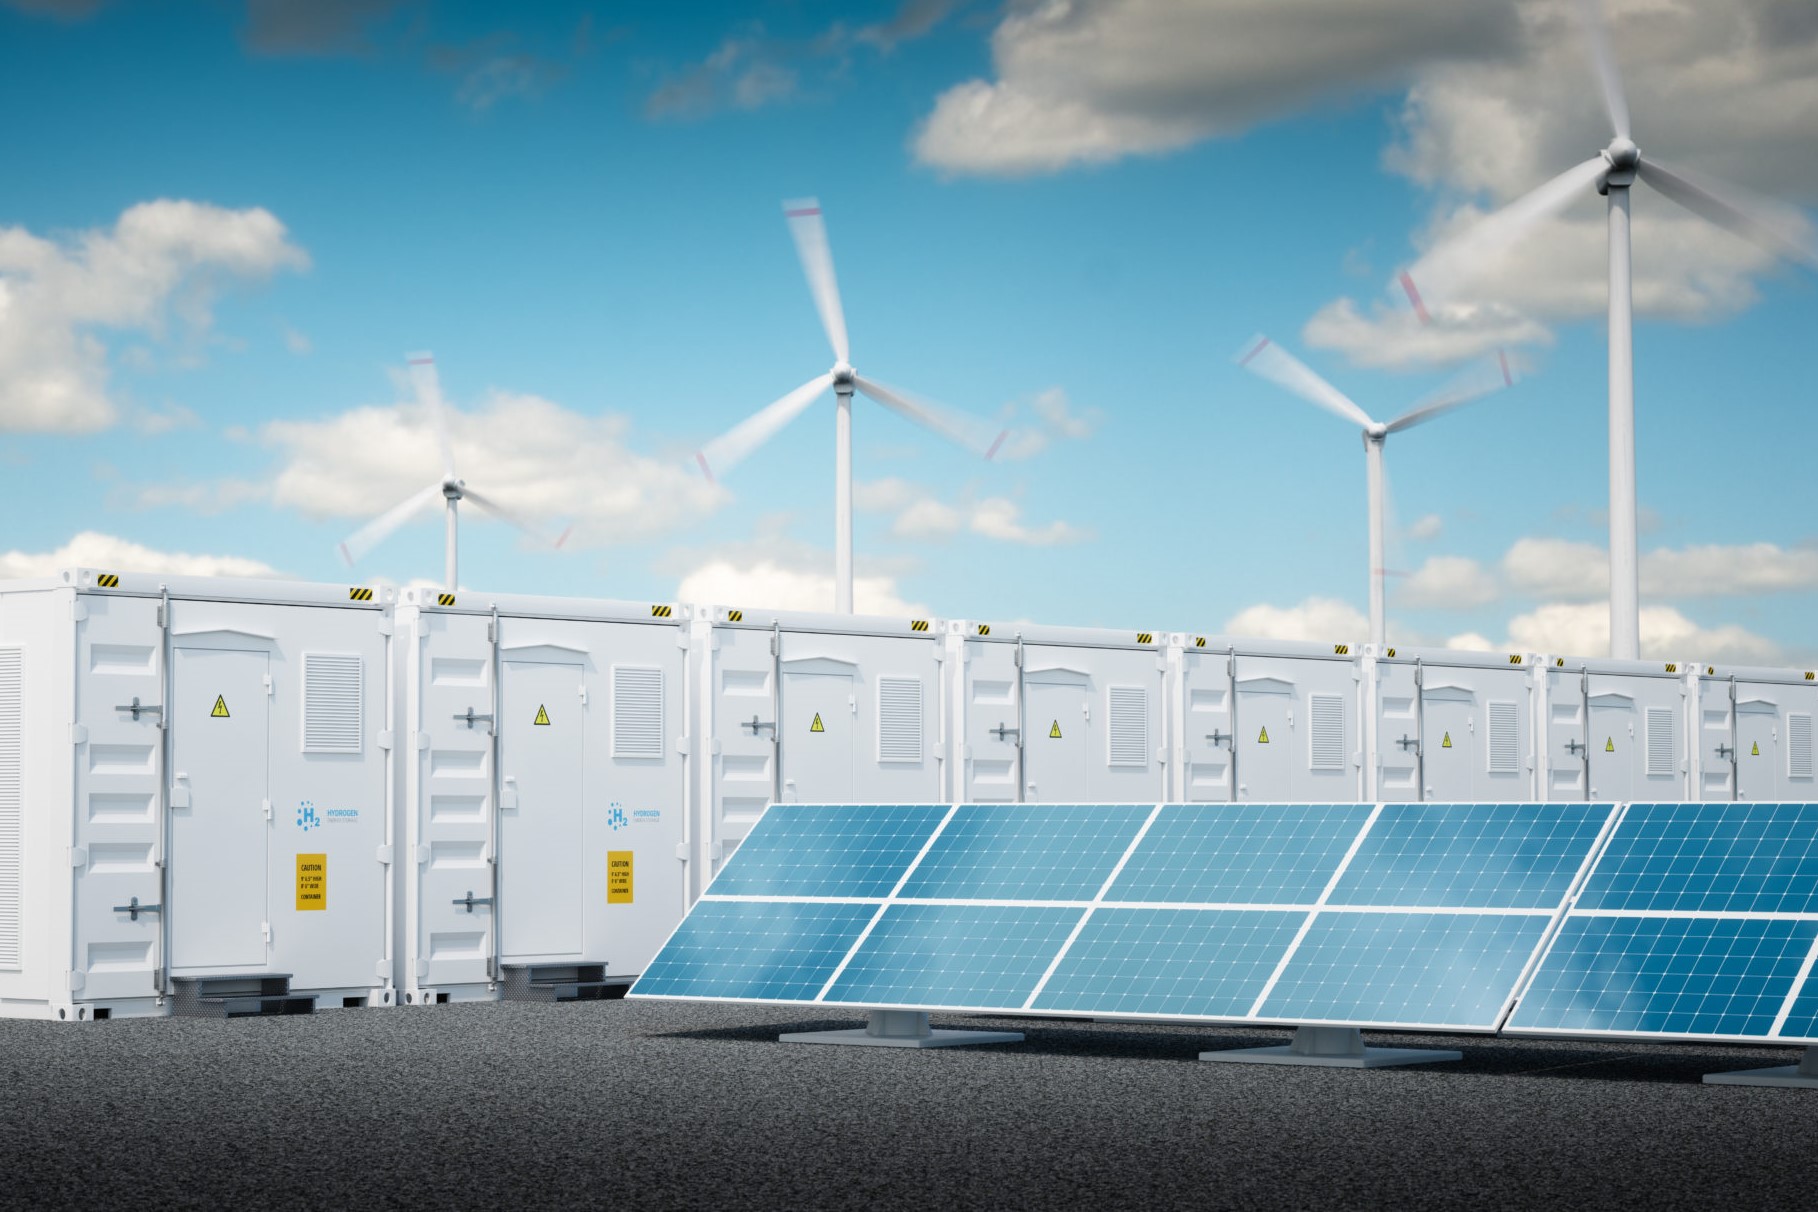 Energiespeicheranlage mit erneuerbaren Energiequellen - Photovoltaik und WIndräder